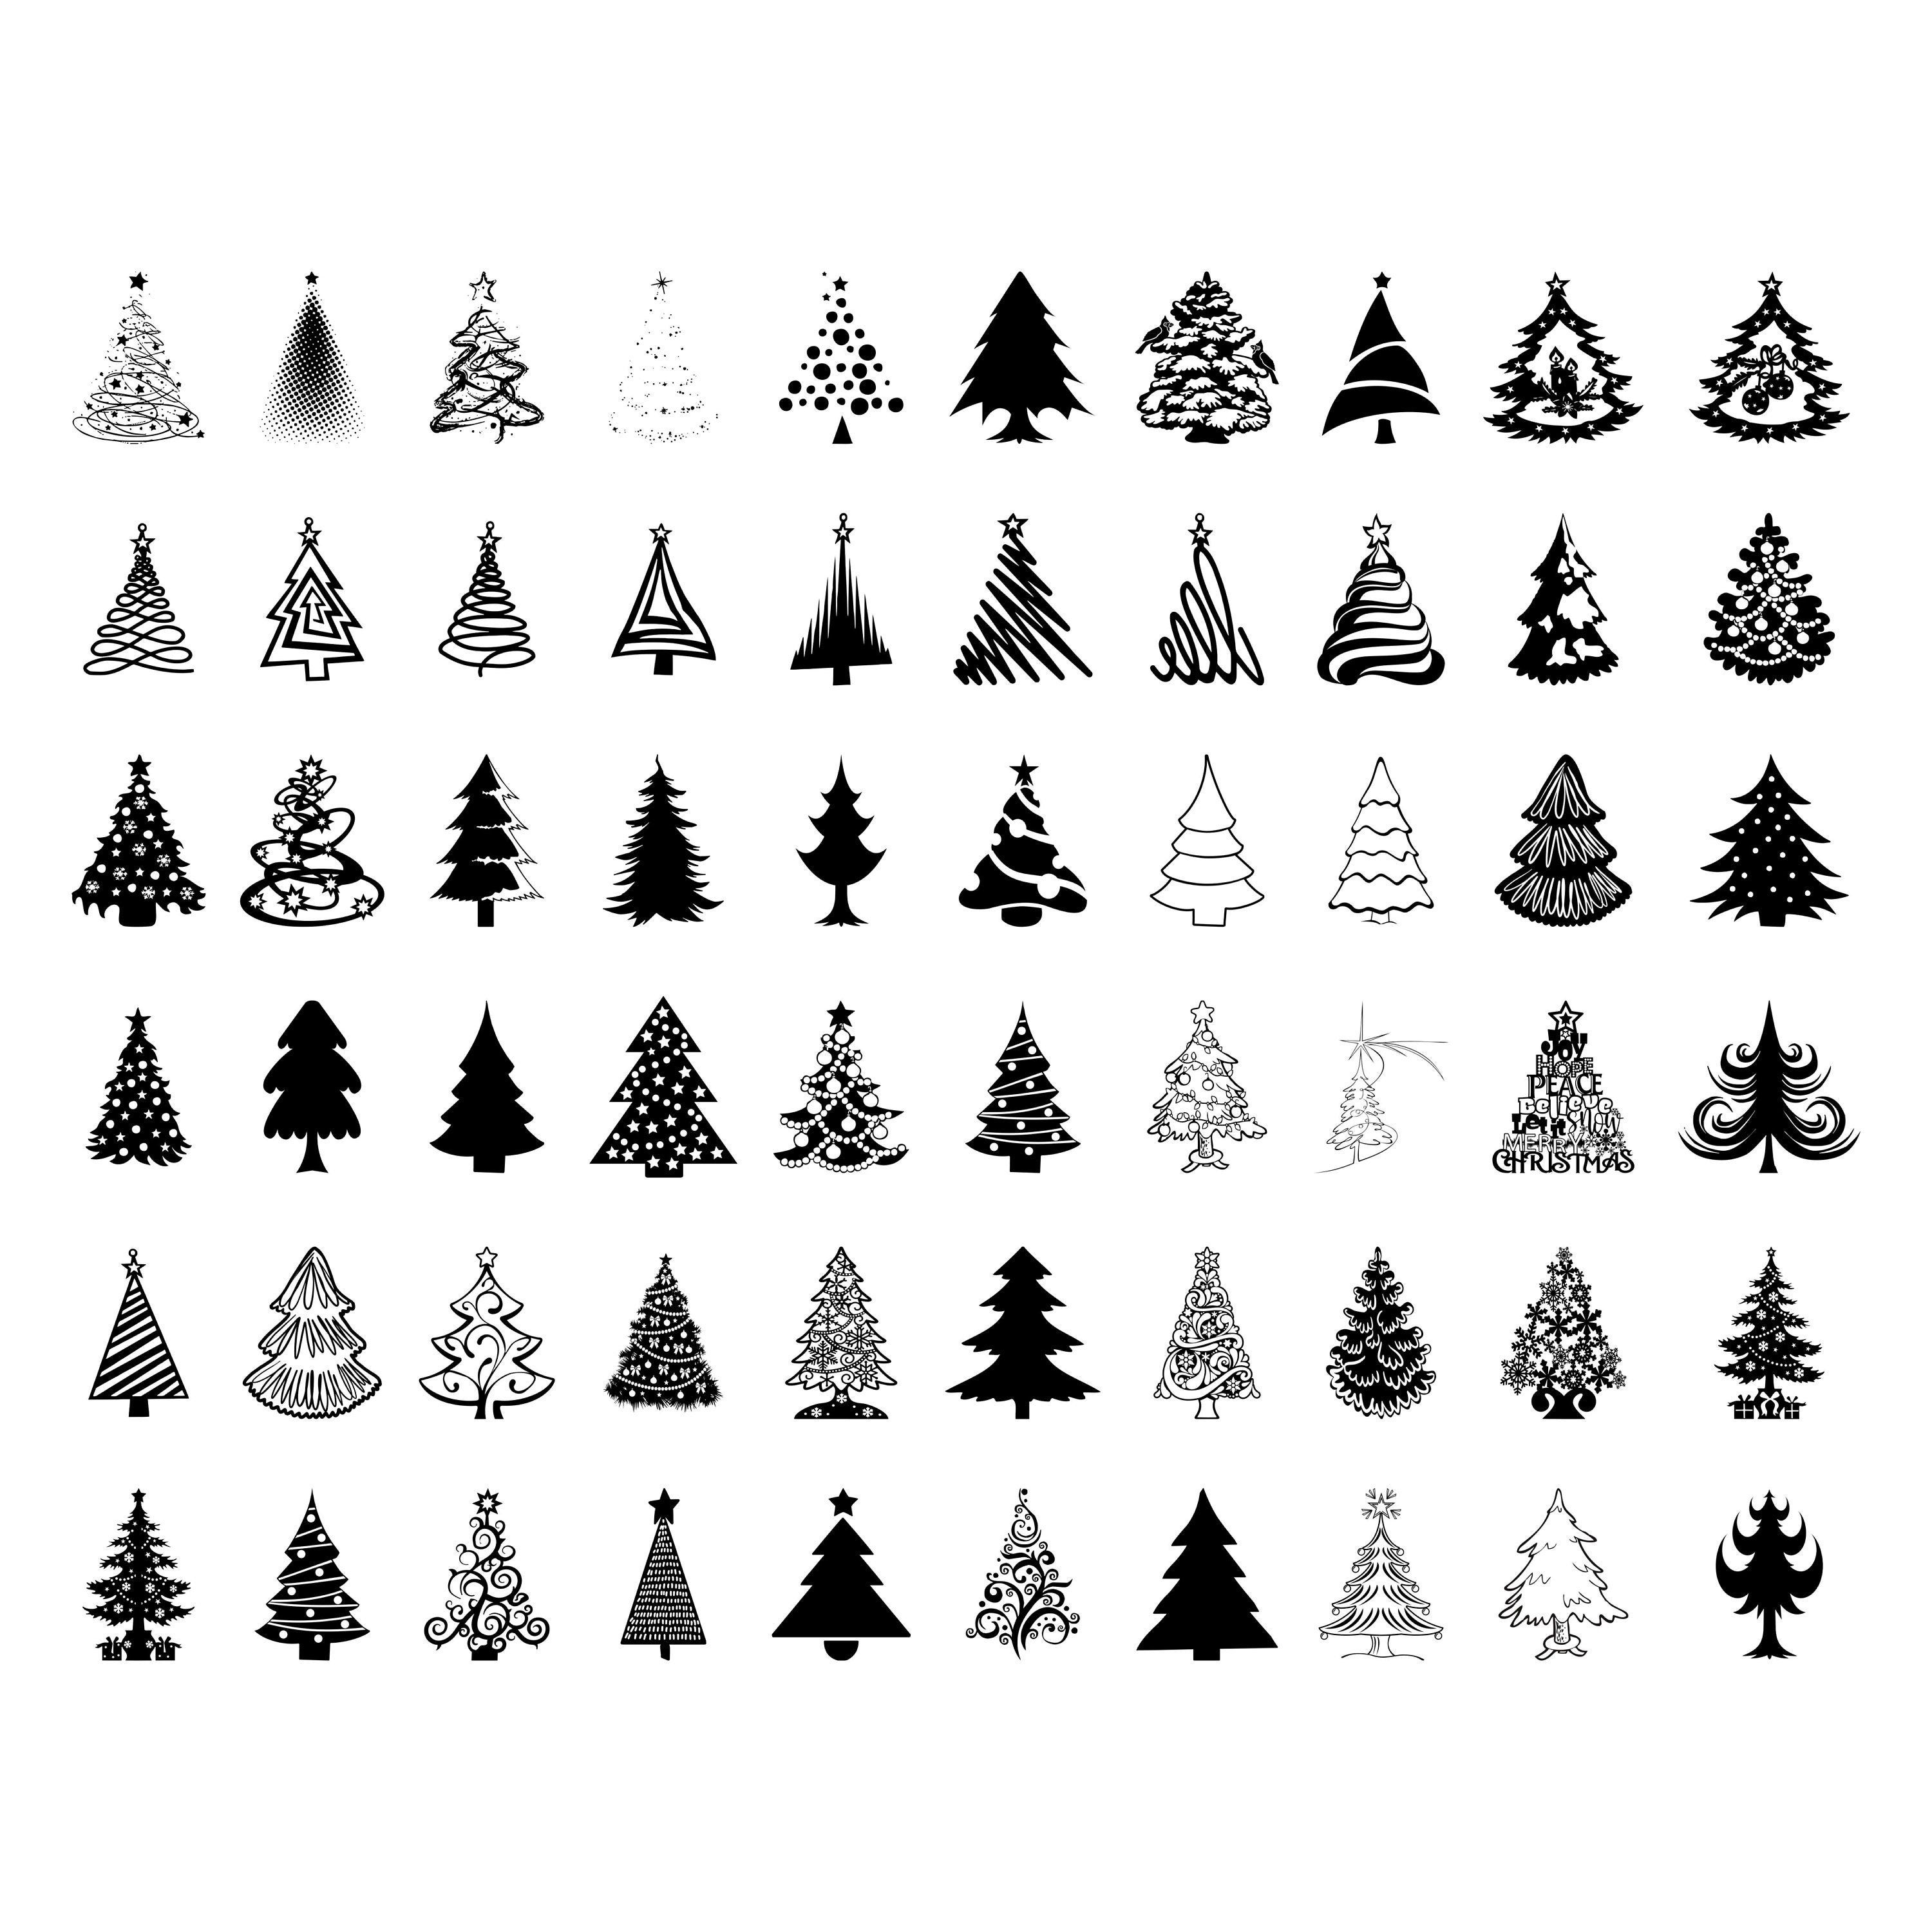 Christmas Tree SVG Bundle, 60 Christmas Tree Designs, Printable Christmas PNG Trees, SVG Cut File, Christmas Décor Gifts